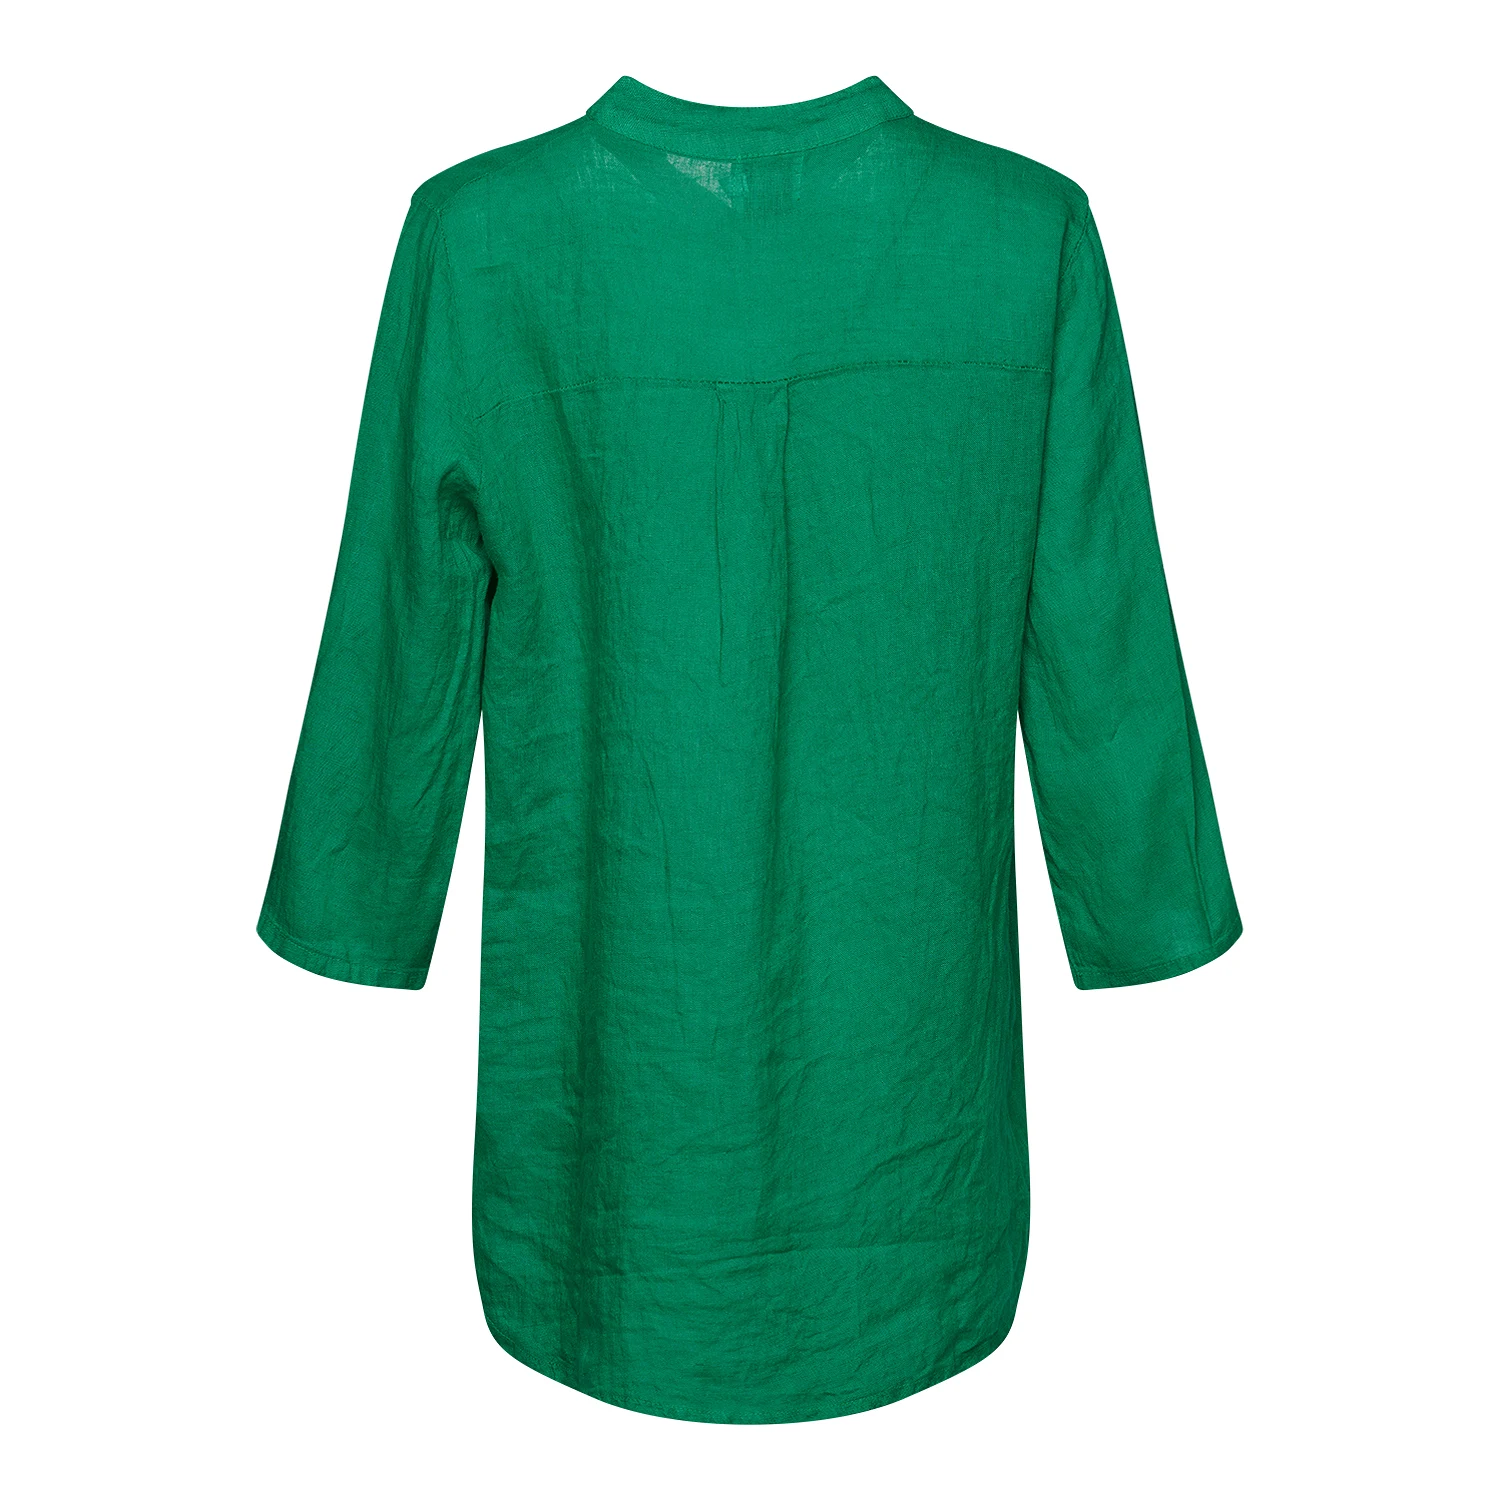 17661, Shirt, Linen - Apple Green